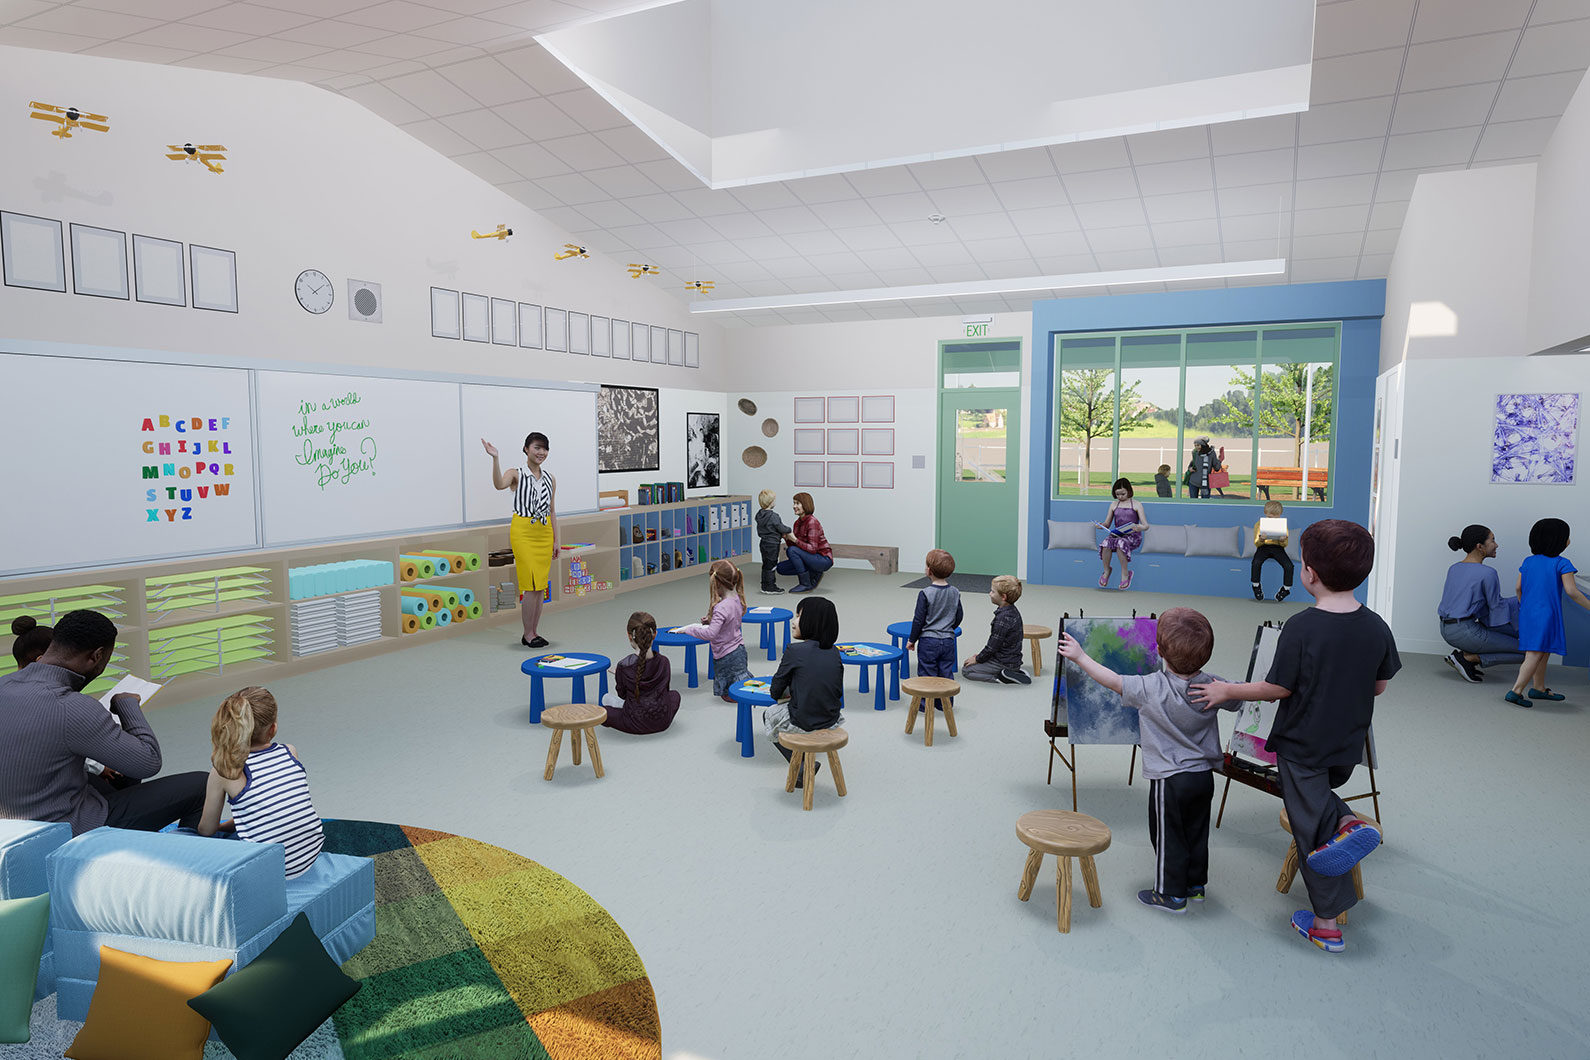 Interior rendering of a Transitional Kindergarten classroom at Manzanita Elementary School in Santa Rosa, CA